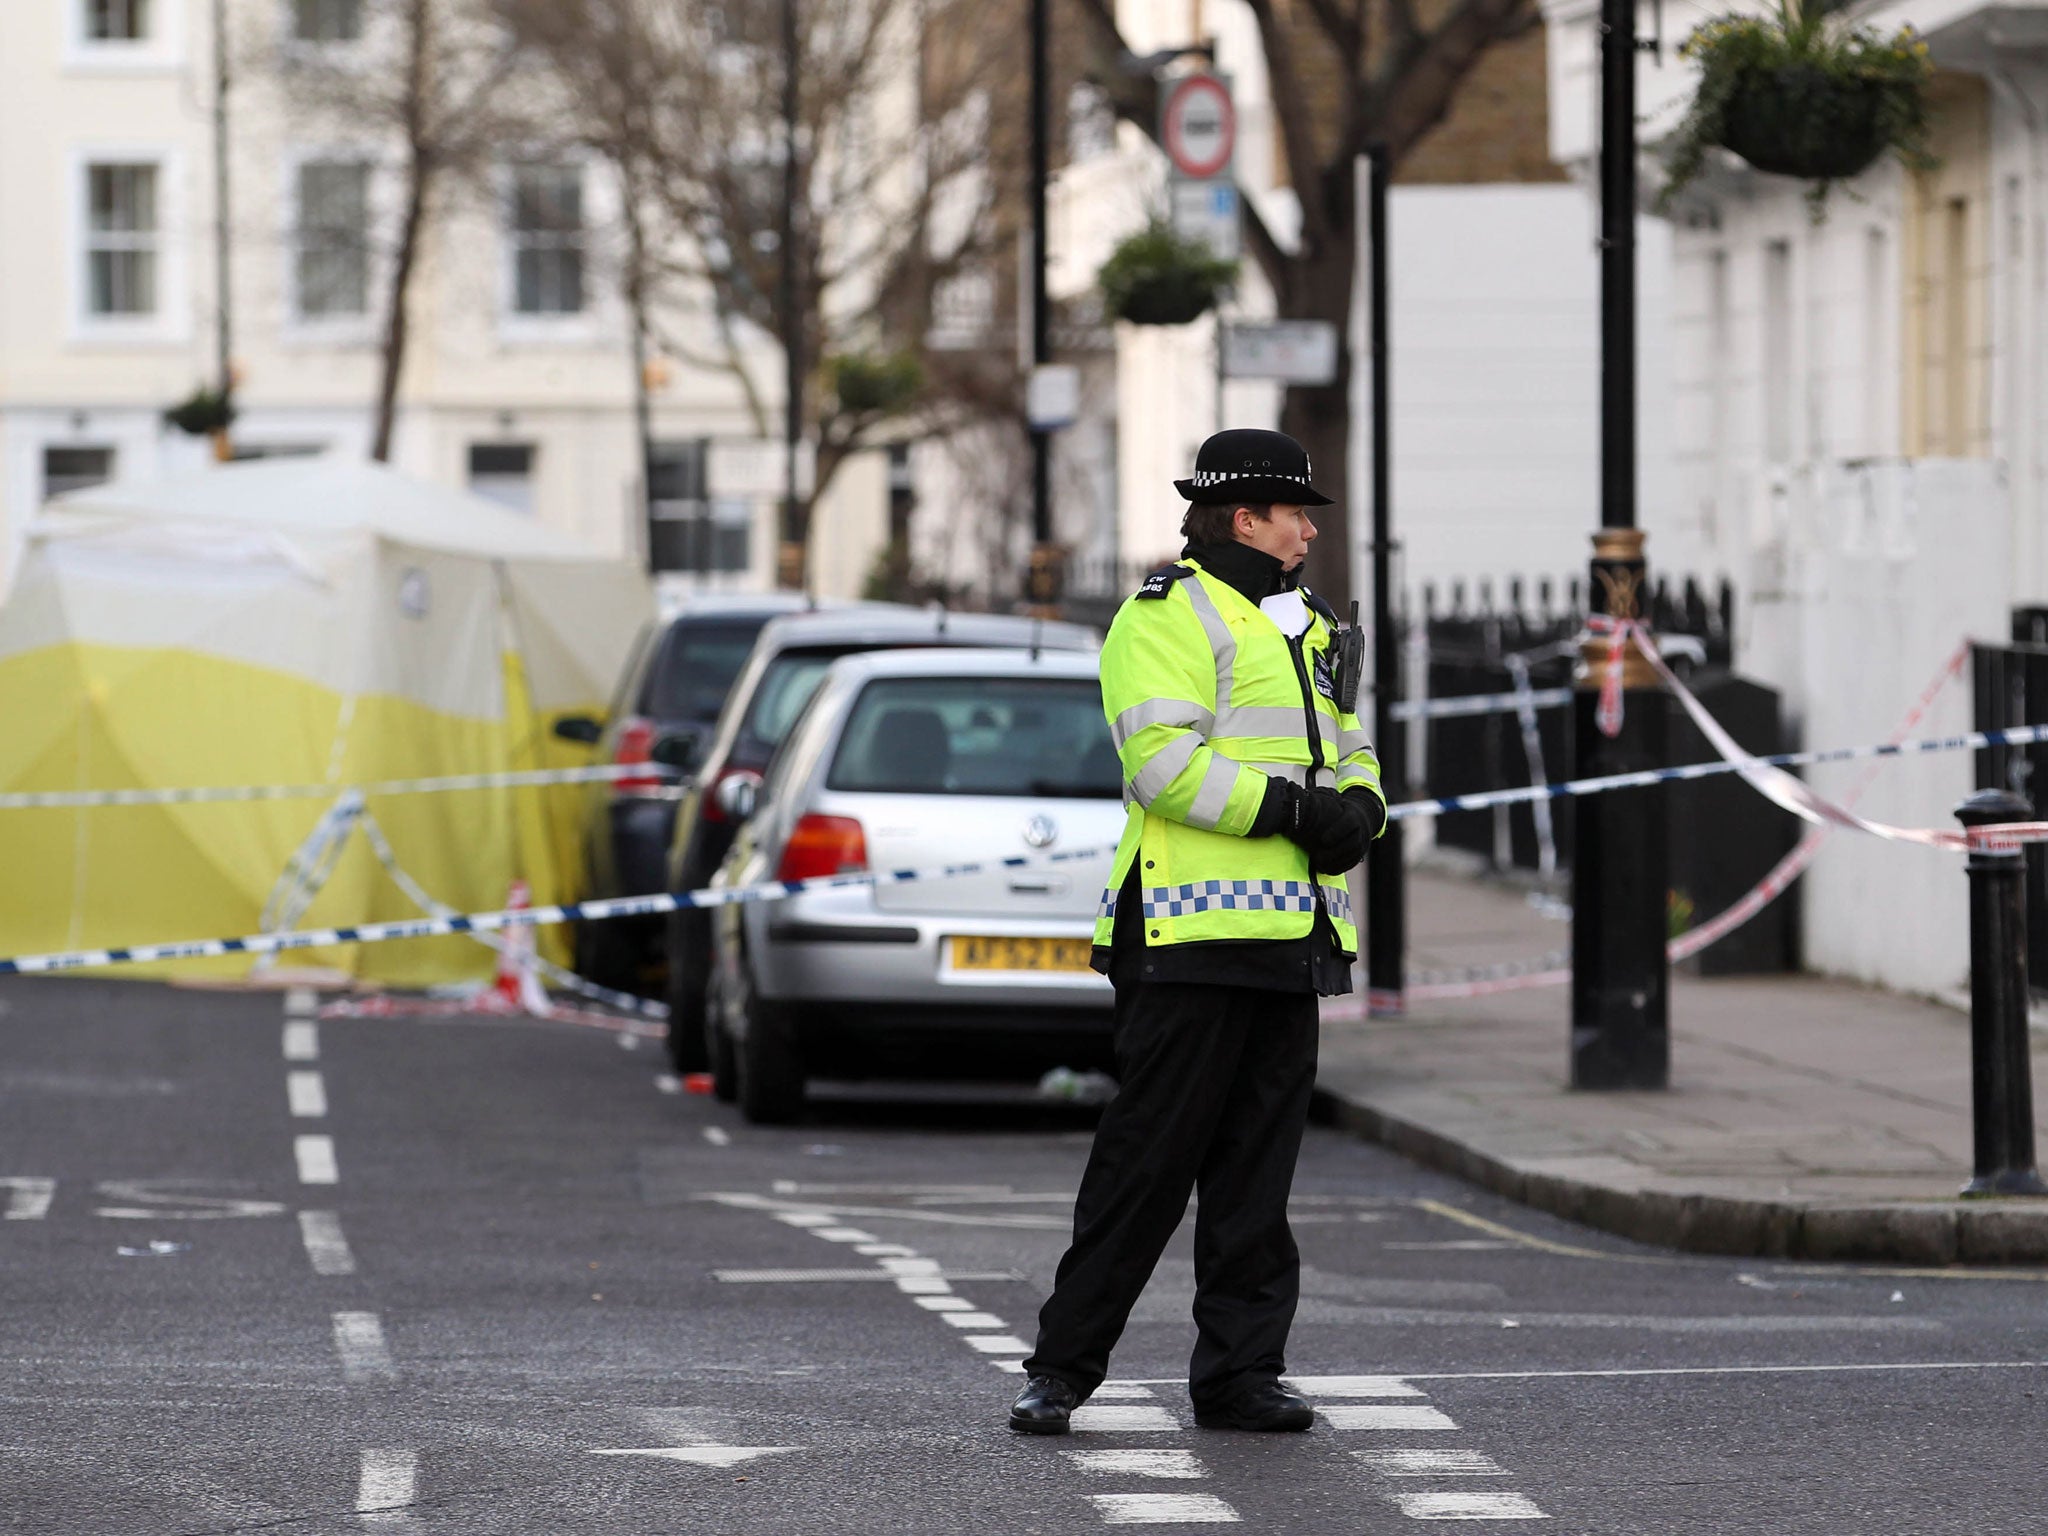 The scene of the stabbing in Pimlico